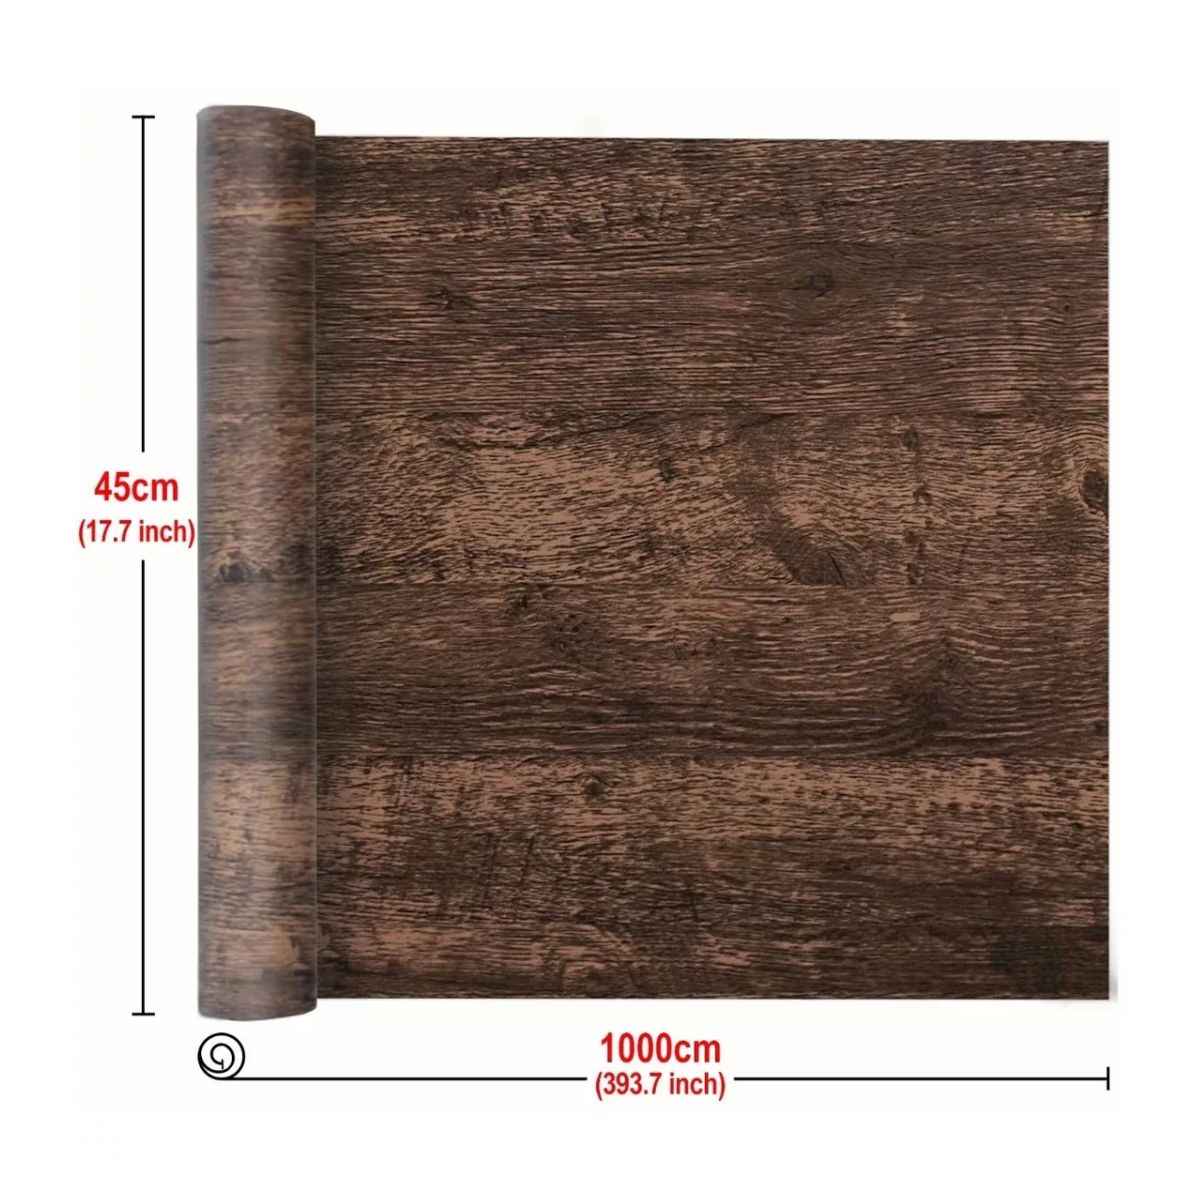  Papel tapiz autoadhesivo con acabado sintético de madera verde  rústica que puede ser vertical u horizontal con gran removedor de papel  tapiz autoadhesivo para pared, póster decorativo para sala de estar